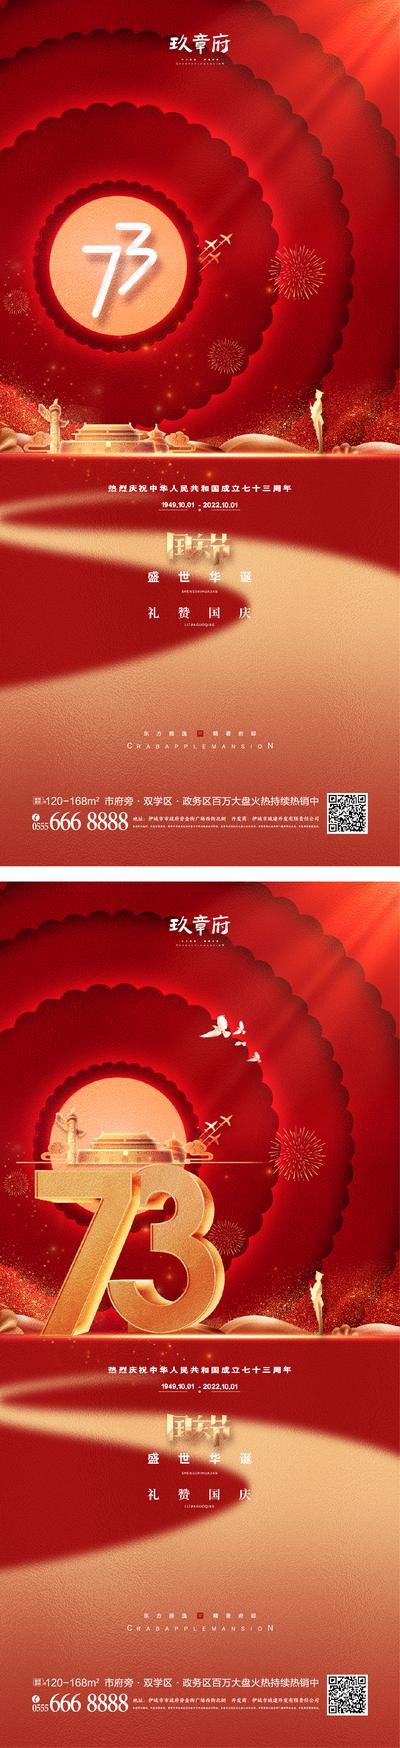 南门网 广告 海报 节日 国庆 73周年 数字 系列 天安门 华表